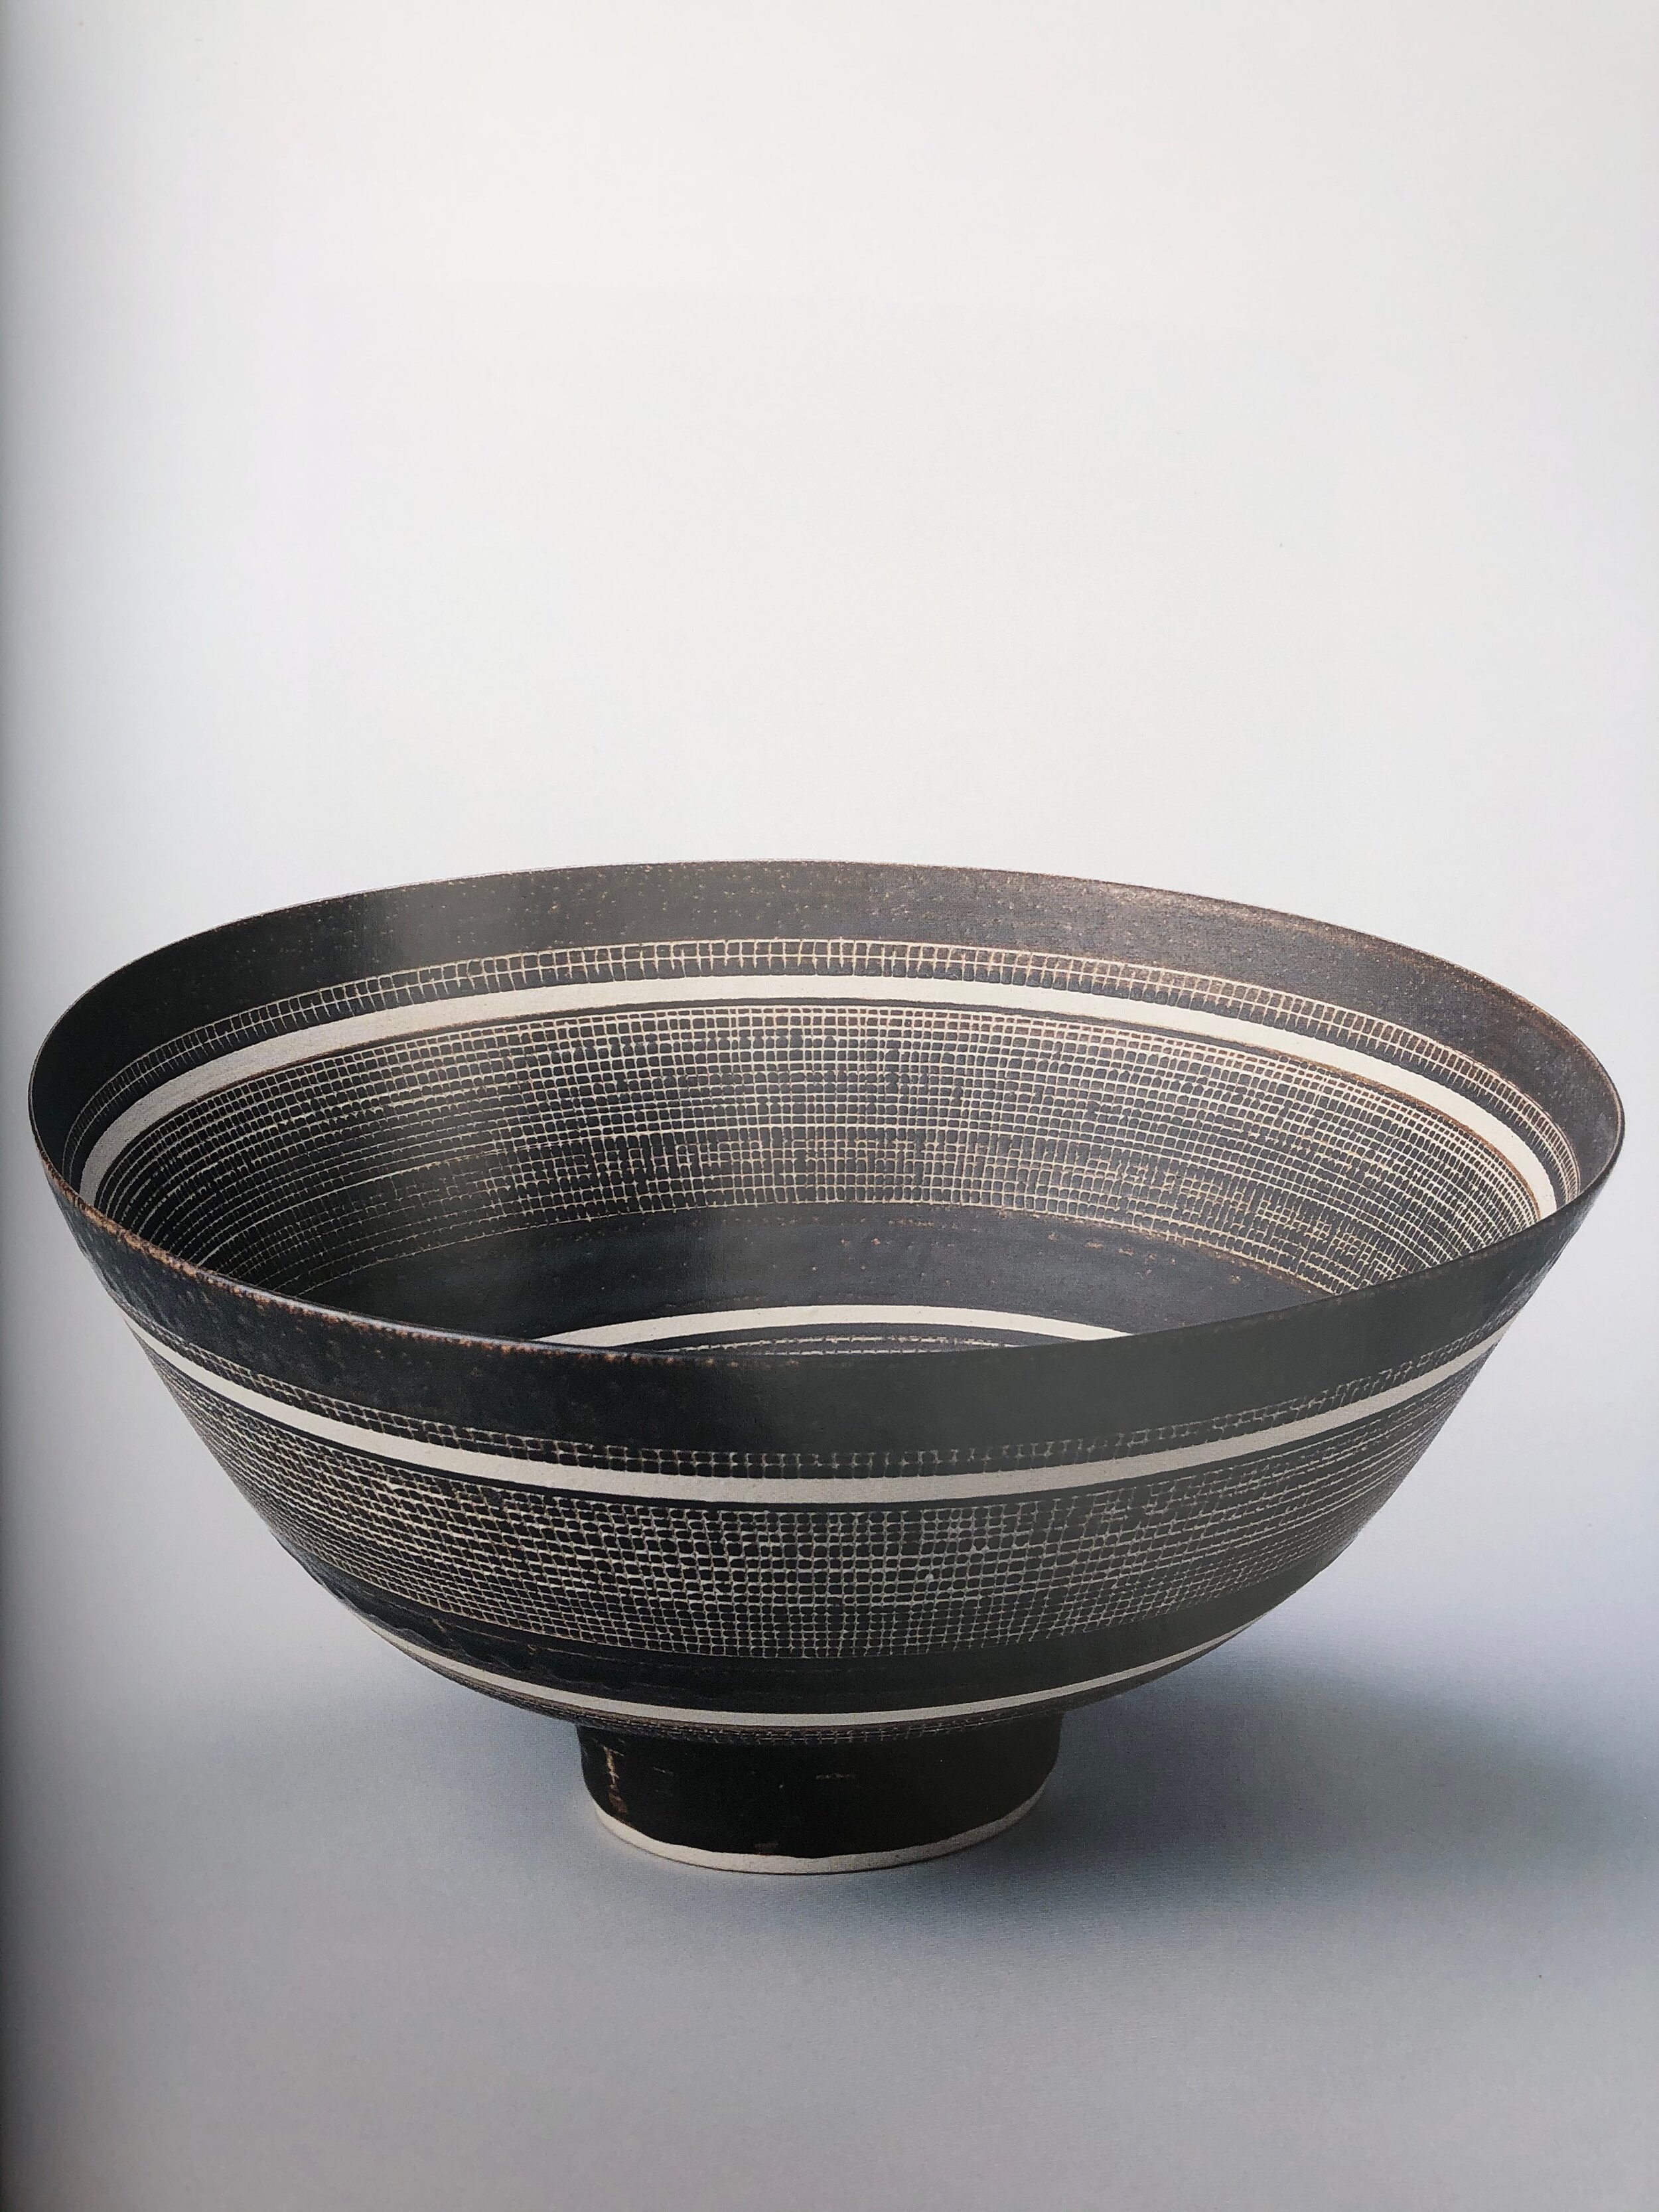 2020 arts ceramique - 7.jpg